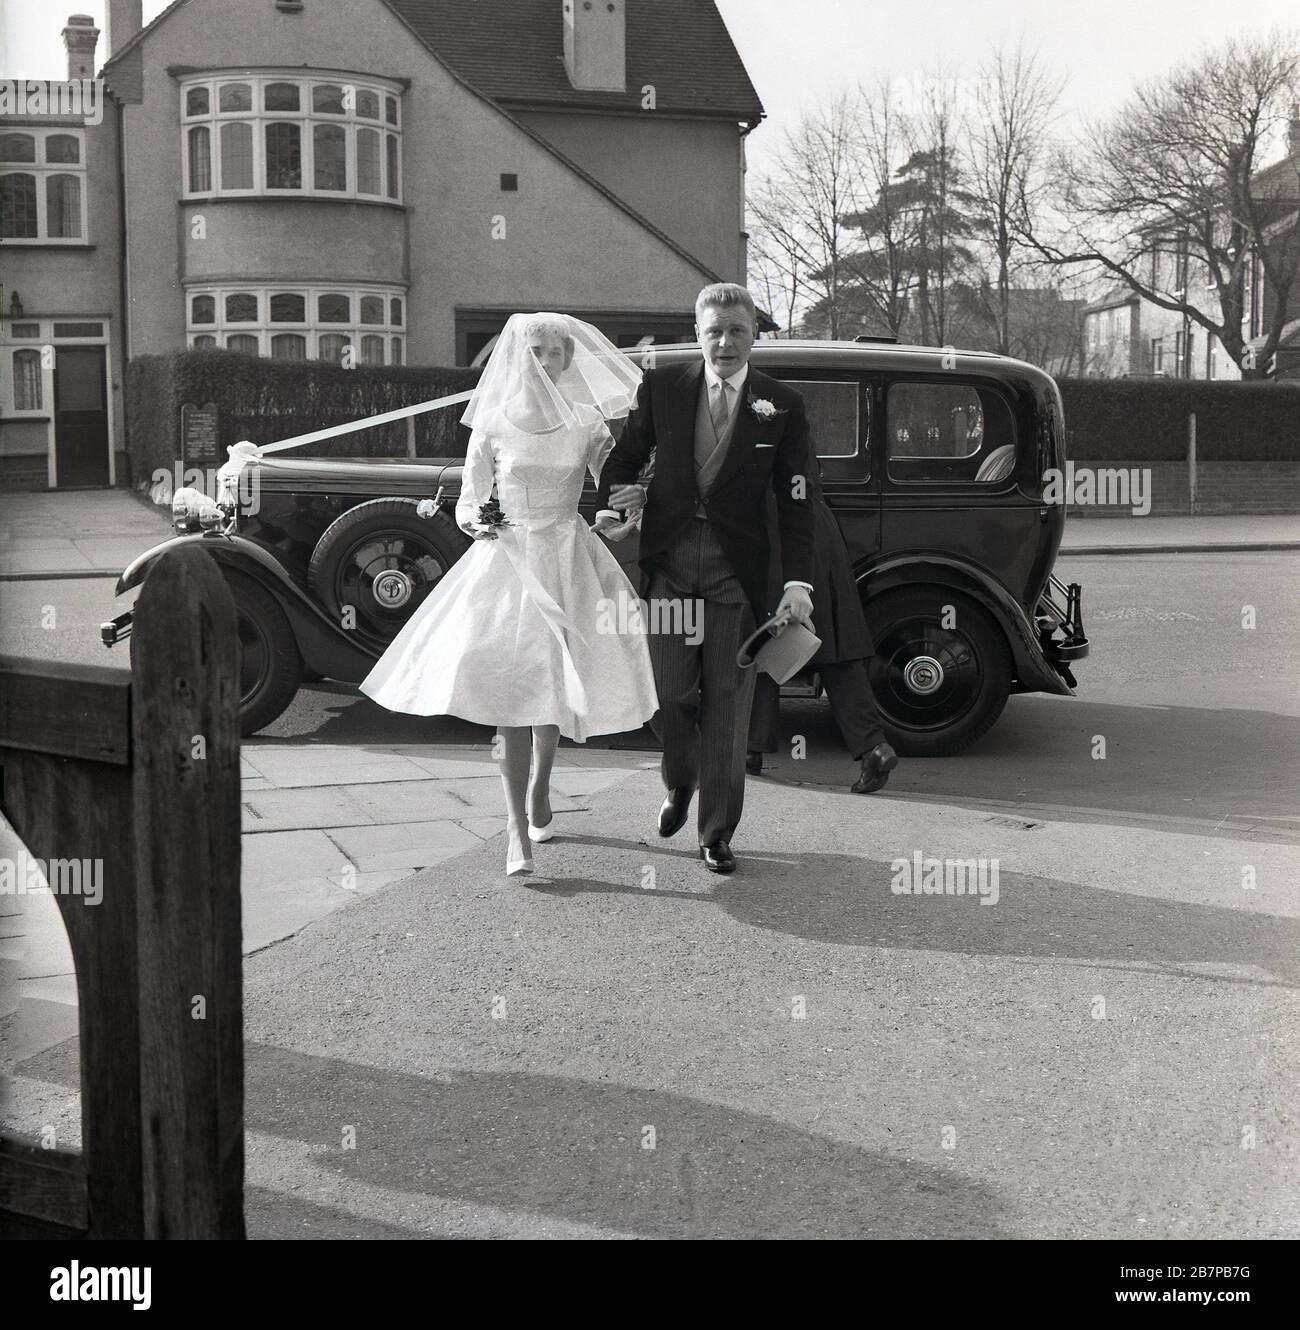 1960, histórico, en el exterior en una calle suburbana, un coche de época aparcado en la carretera, mientras una novia llega para su boda, sureste de Londres, Inglaterra, Reino Unido. Foto de stock